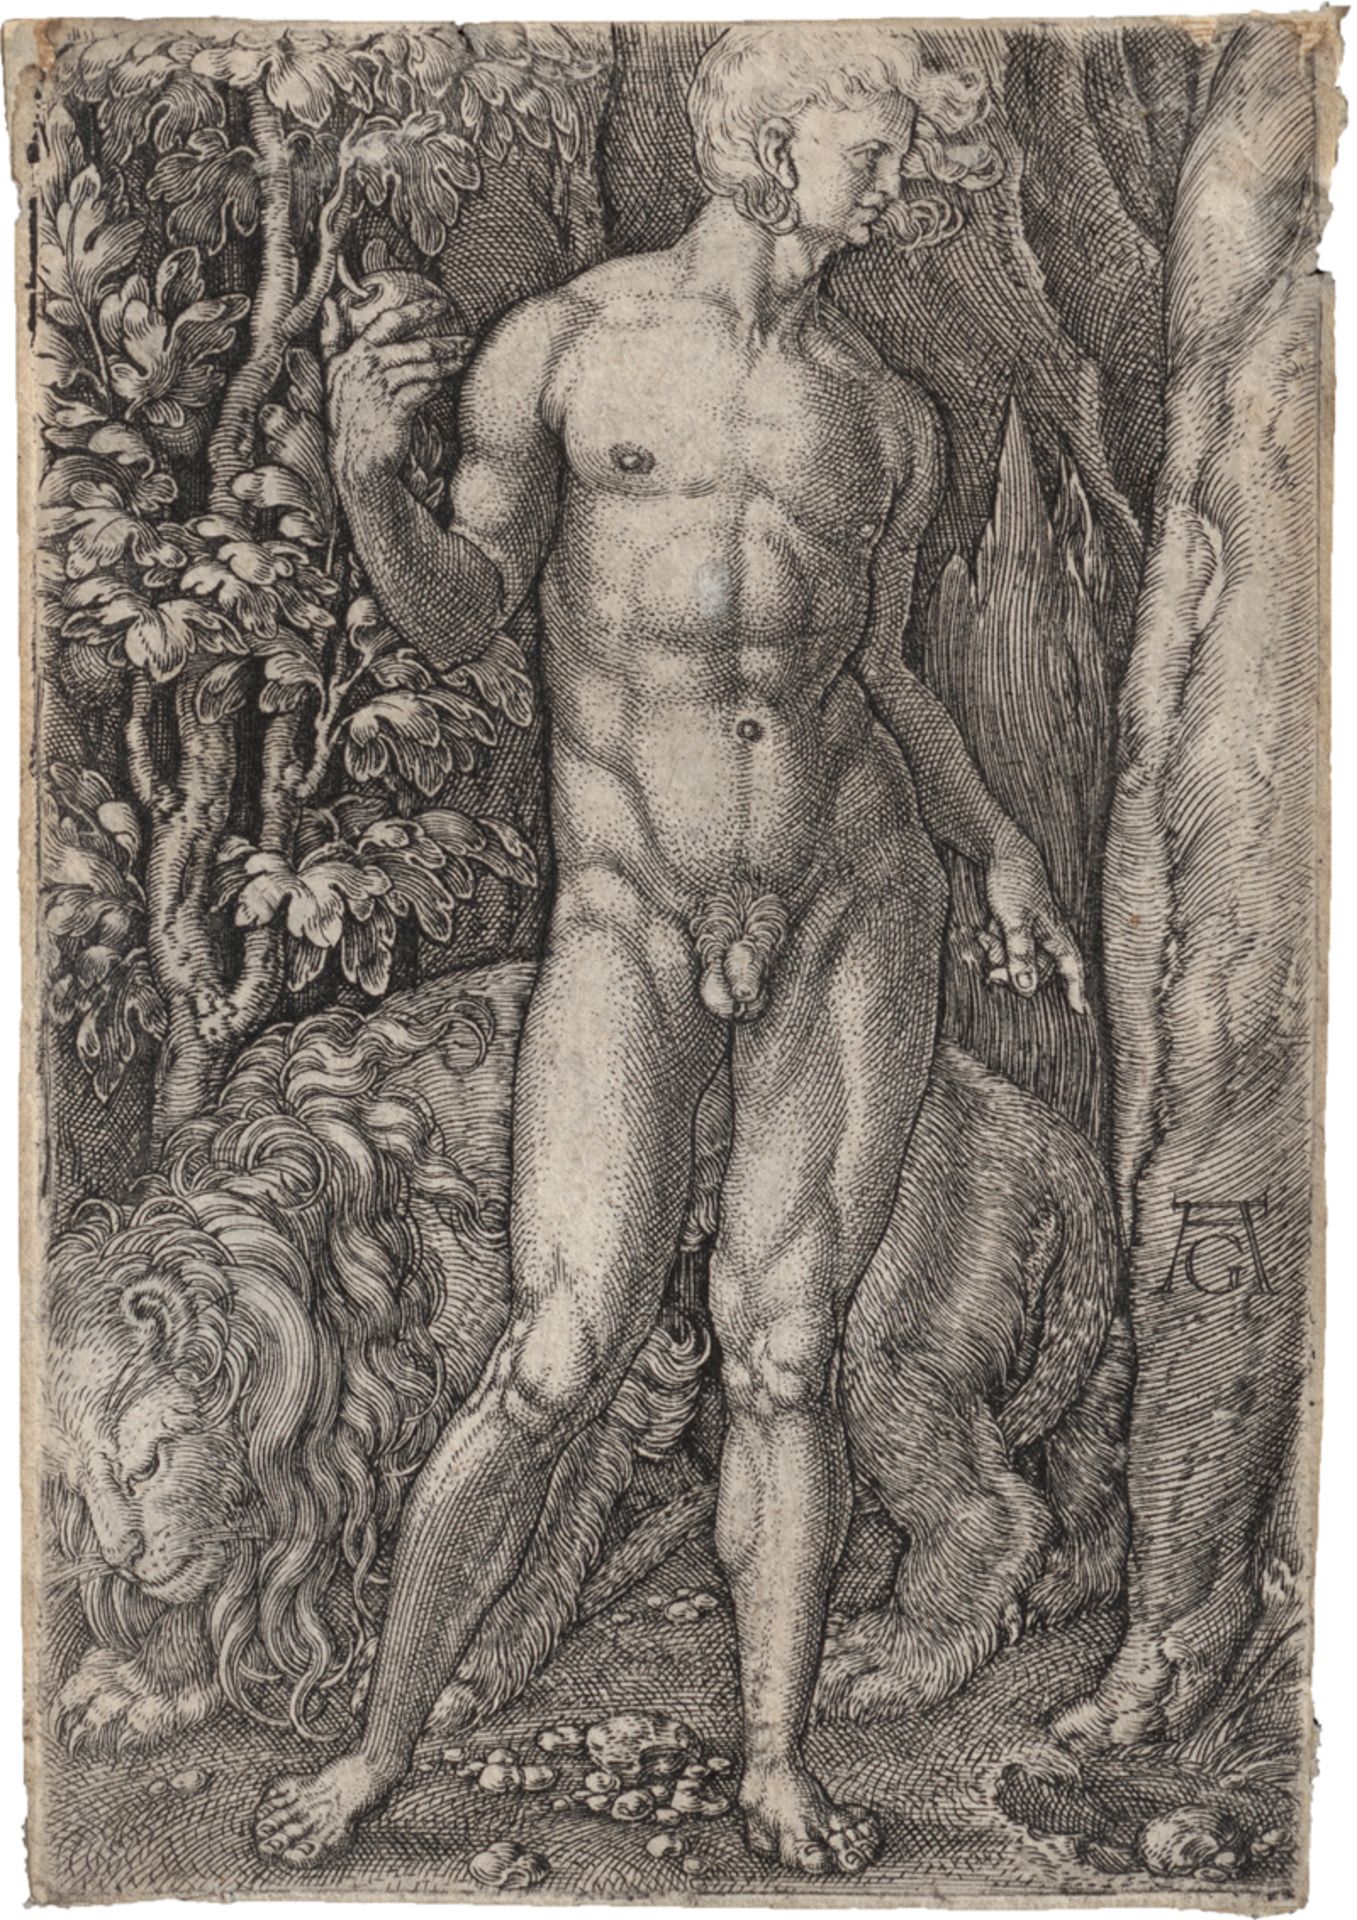 Aldegrever, Heinrich: Adam mit dem Löwen: Eva mit der Hirschkuh - Image 2 of 2